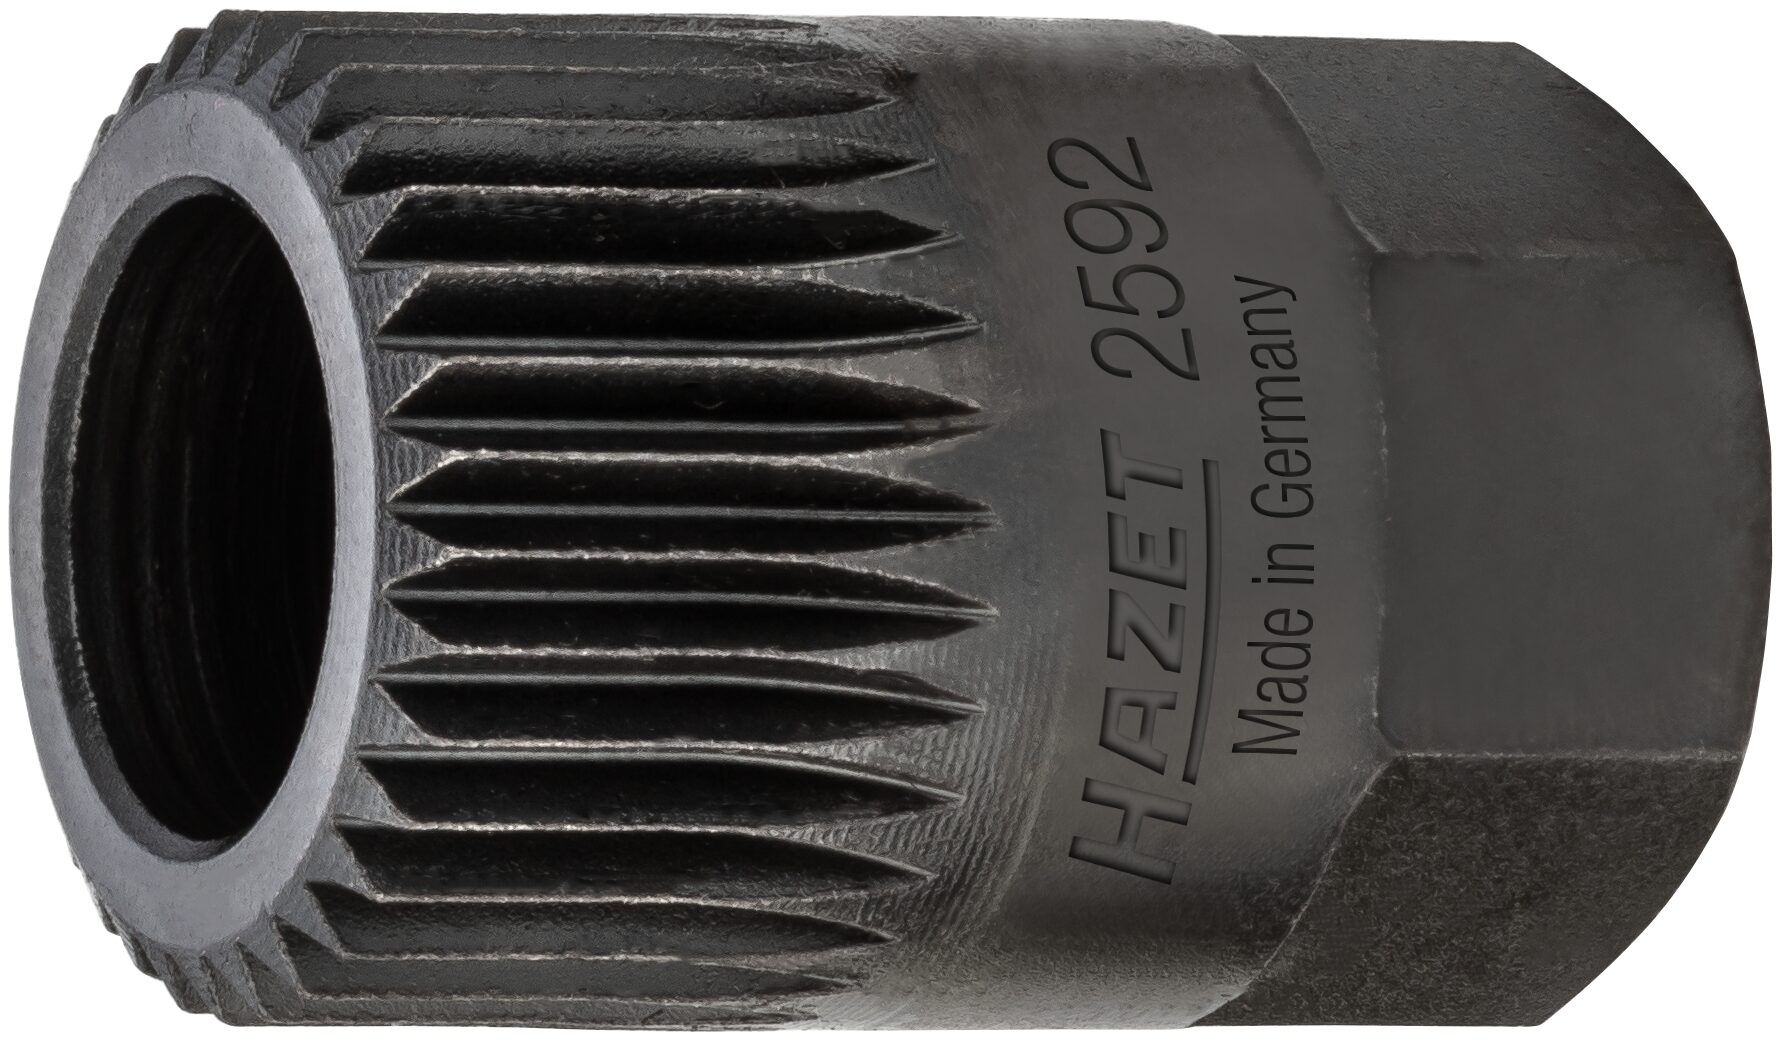 HAZET Keil(rippen)riemenscheibe-Adapter 2592 · Außen-Sechskant 17 mm · Vielzahn Profil · 19.6 mm